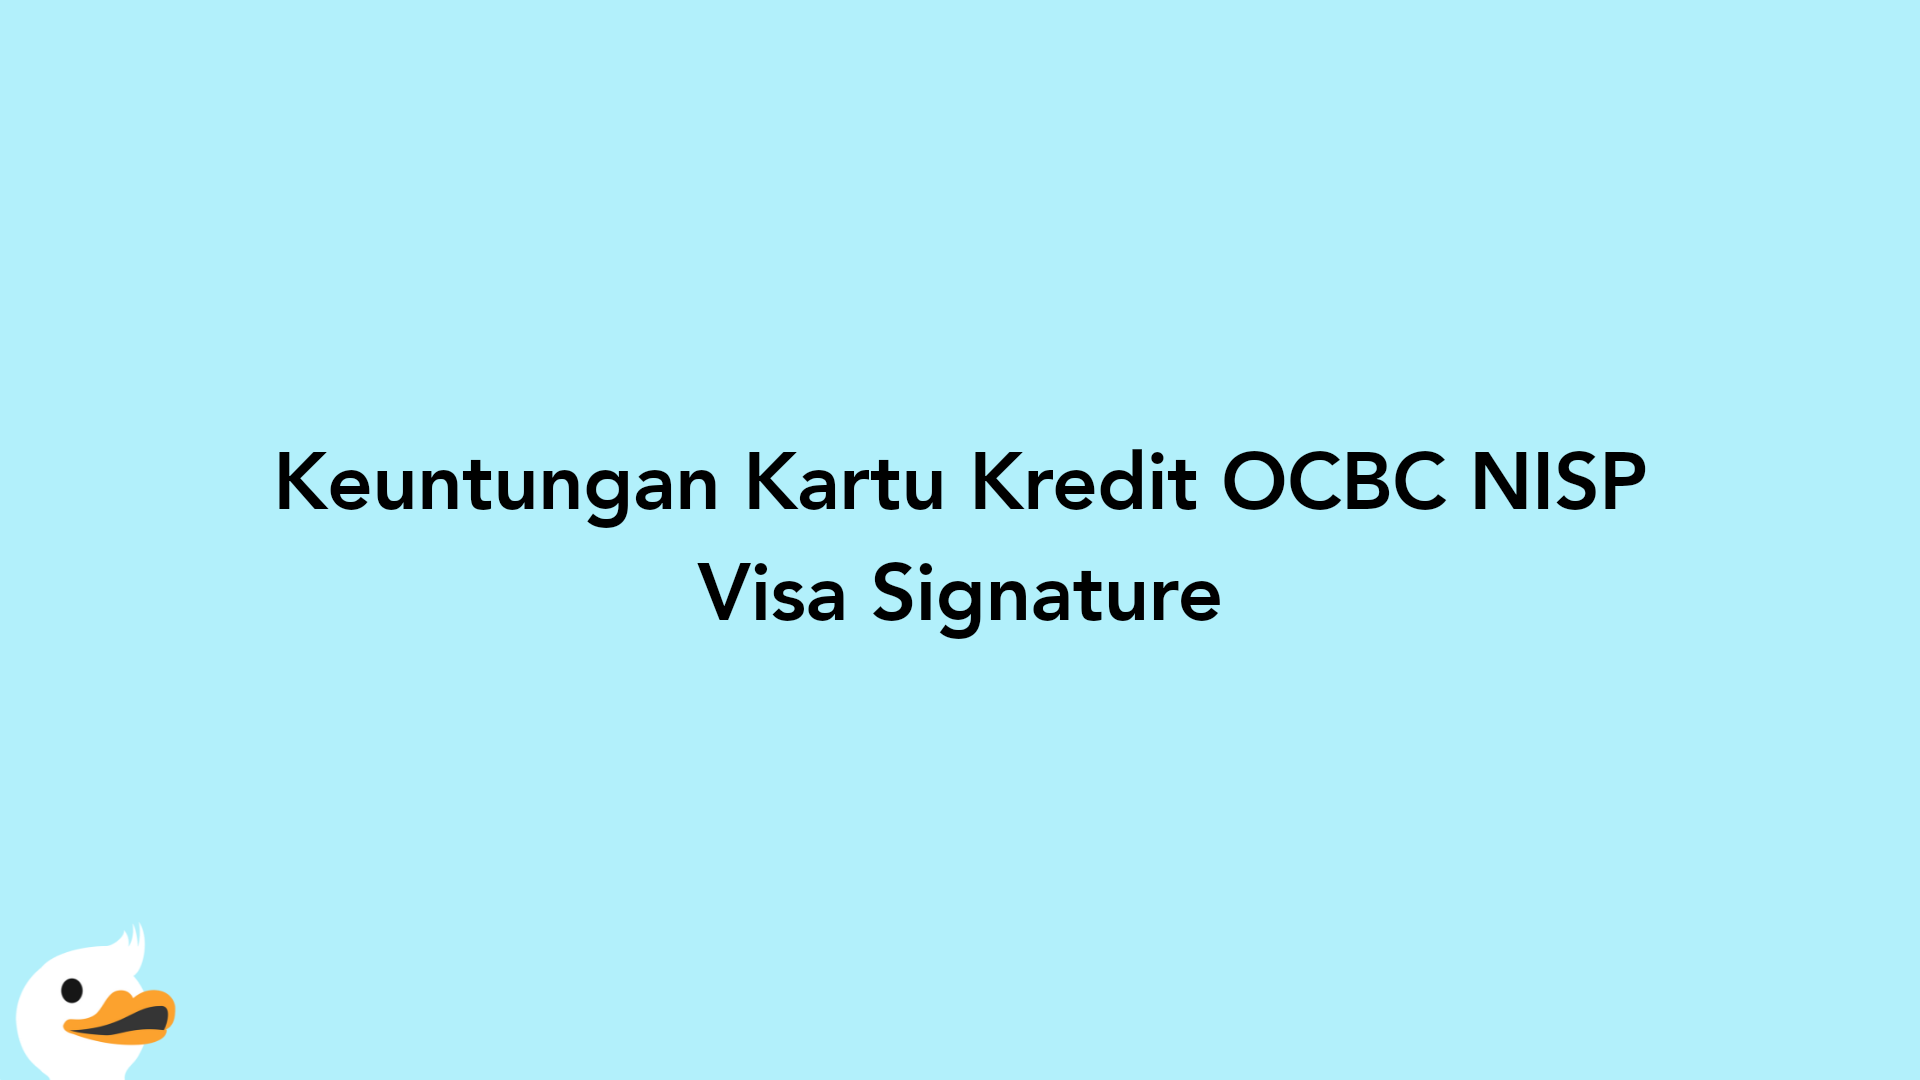 Keuntungan Kartu Kredit OCBC NISP Visa Signature